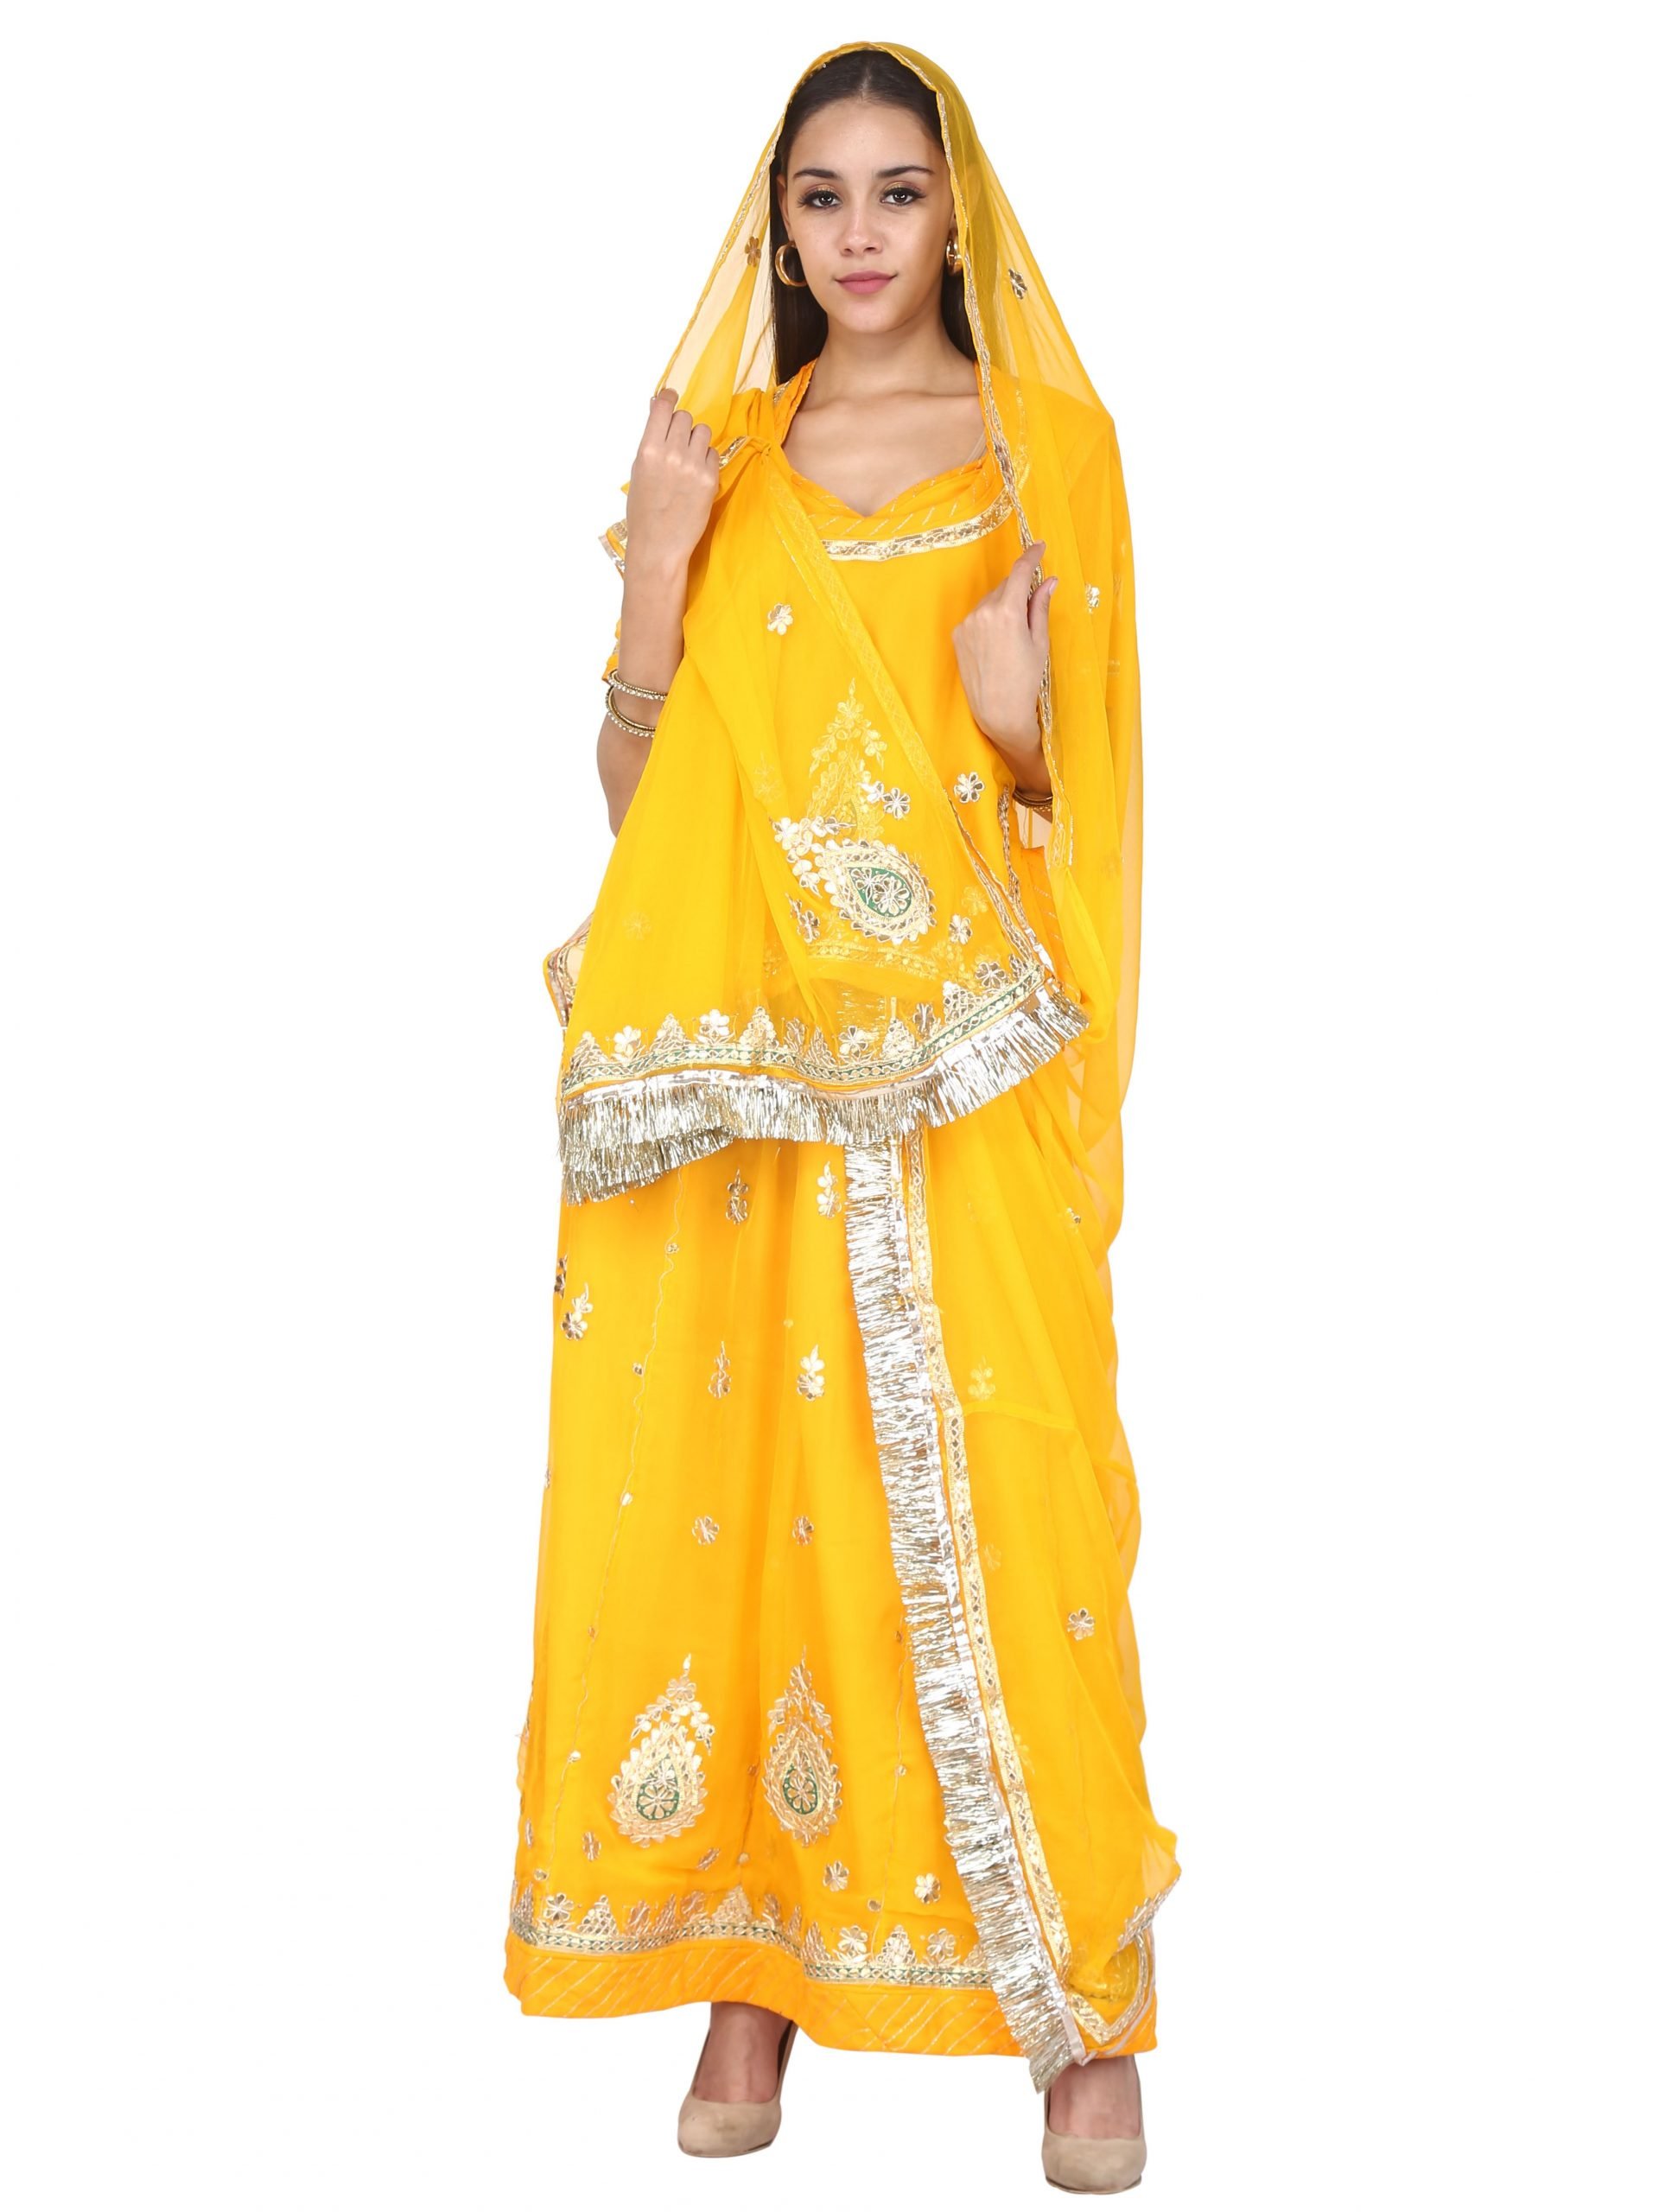 5 Daily Wear Rajputi Dress | 5 डेली वियर राजपूती सूट जो आपके पास होने  चाहिये - YouTube